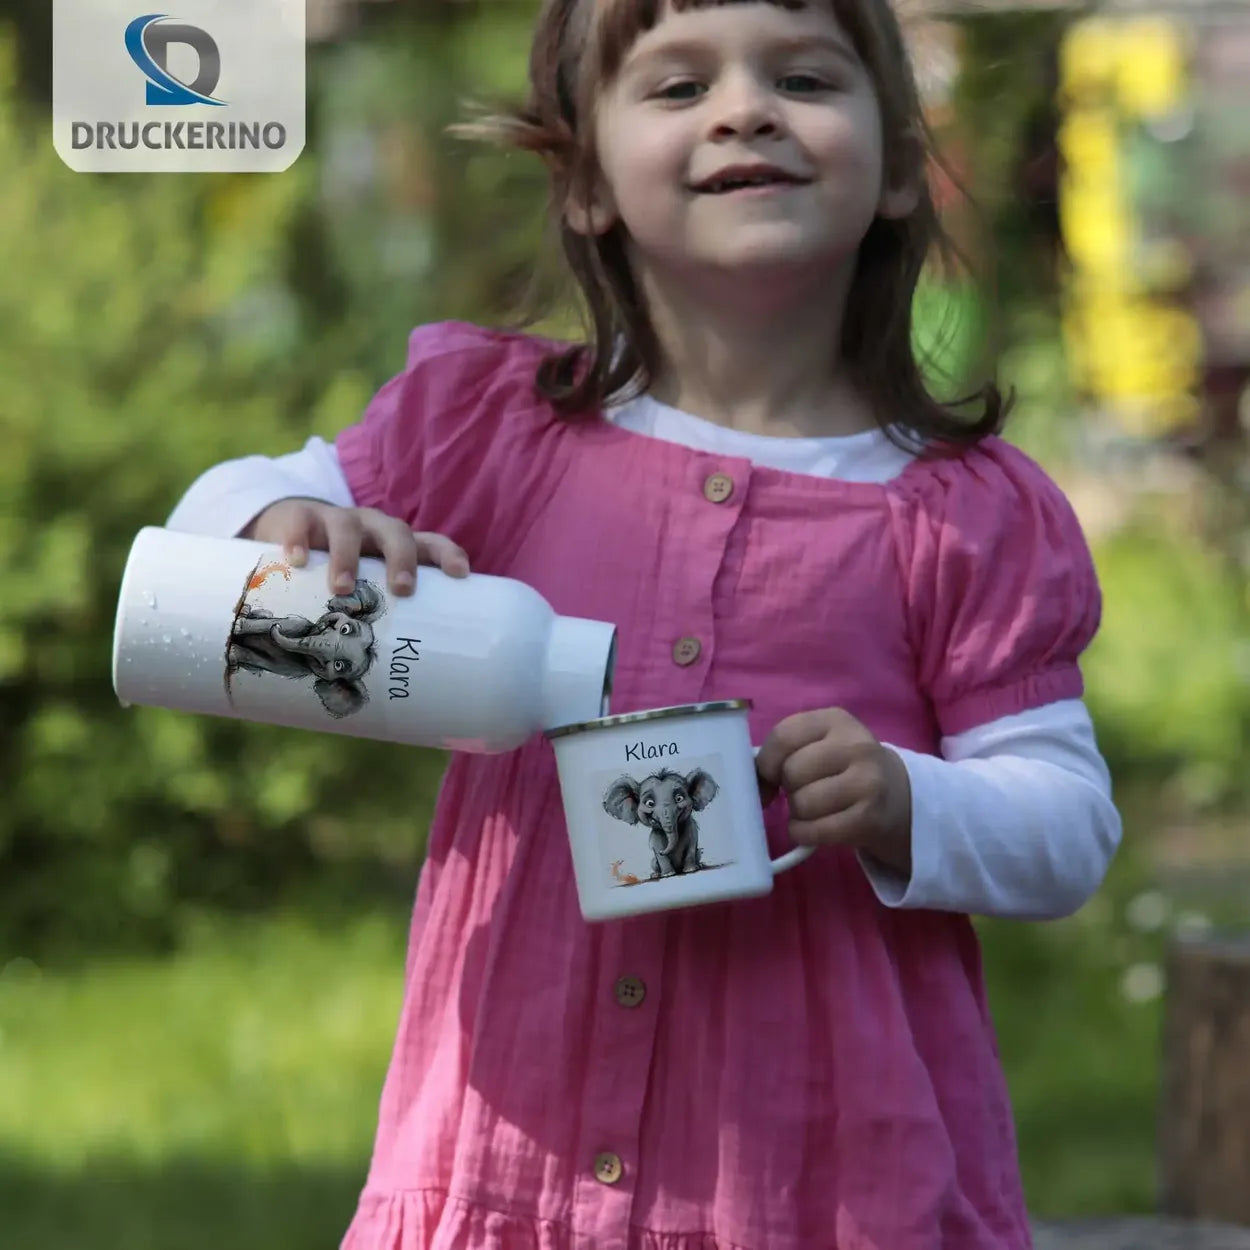 Zauber-Elefant Emaille Tasse für Kinder personalisiert Emailletasse Druckerino   